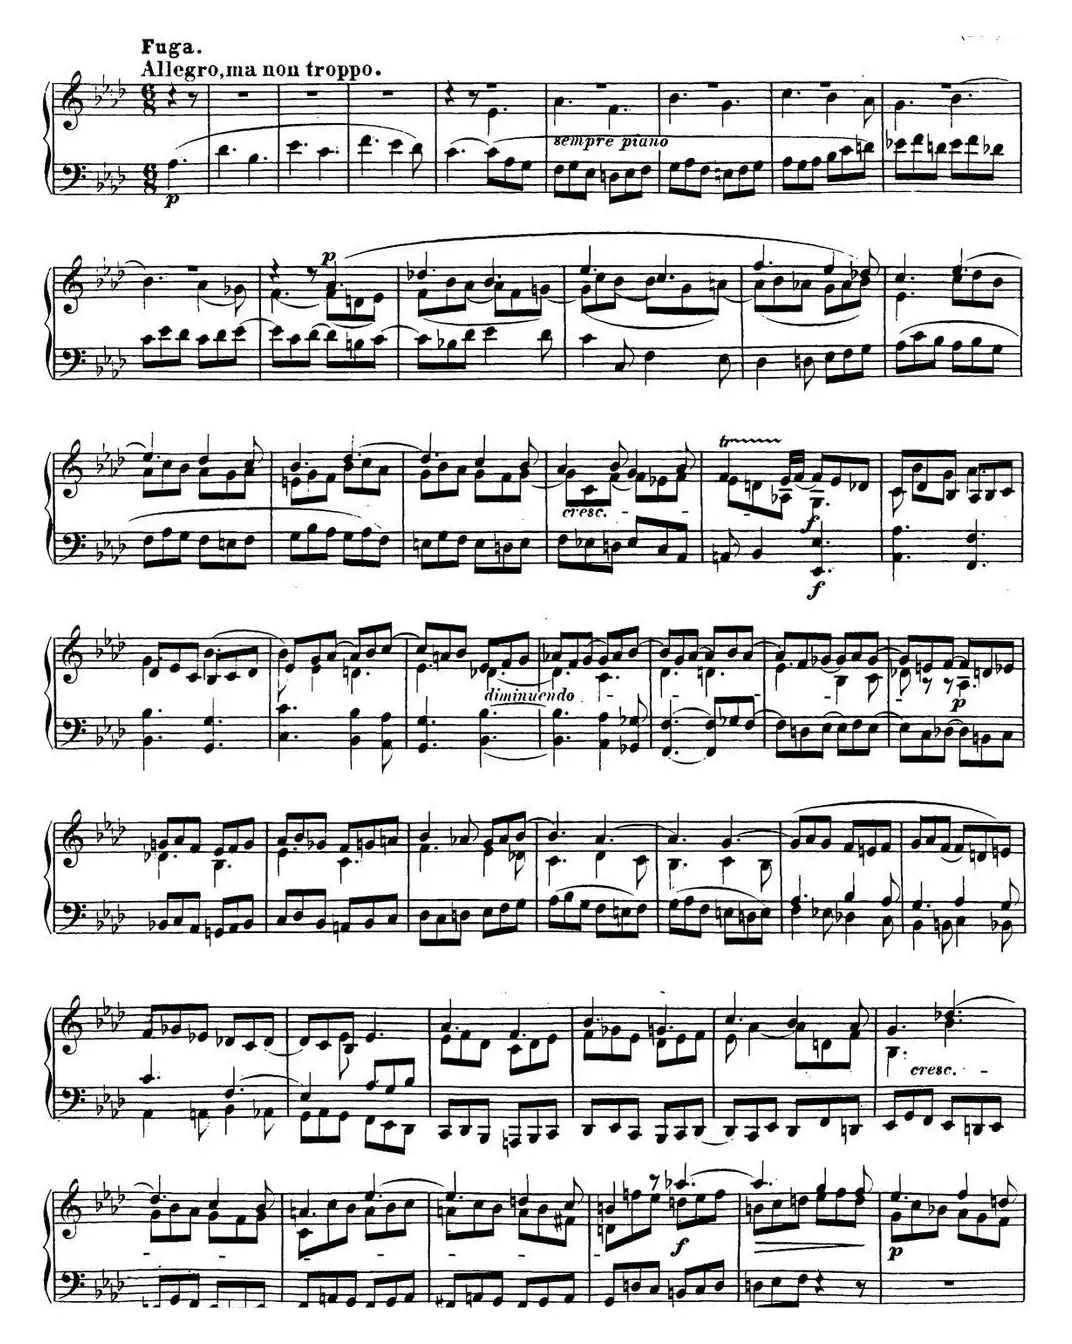 贝多芬钢琴奏鸣曲31 降A大调 Op.110 A-flat major